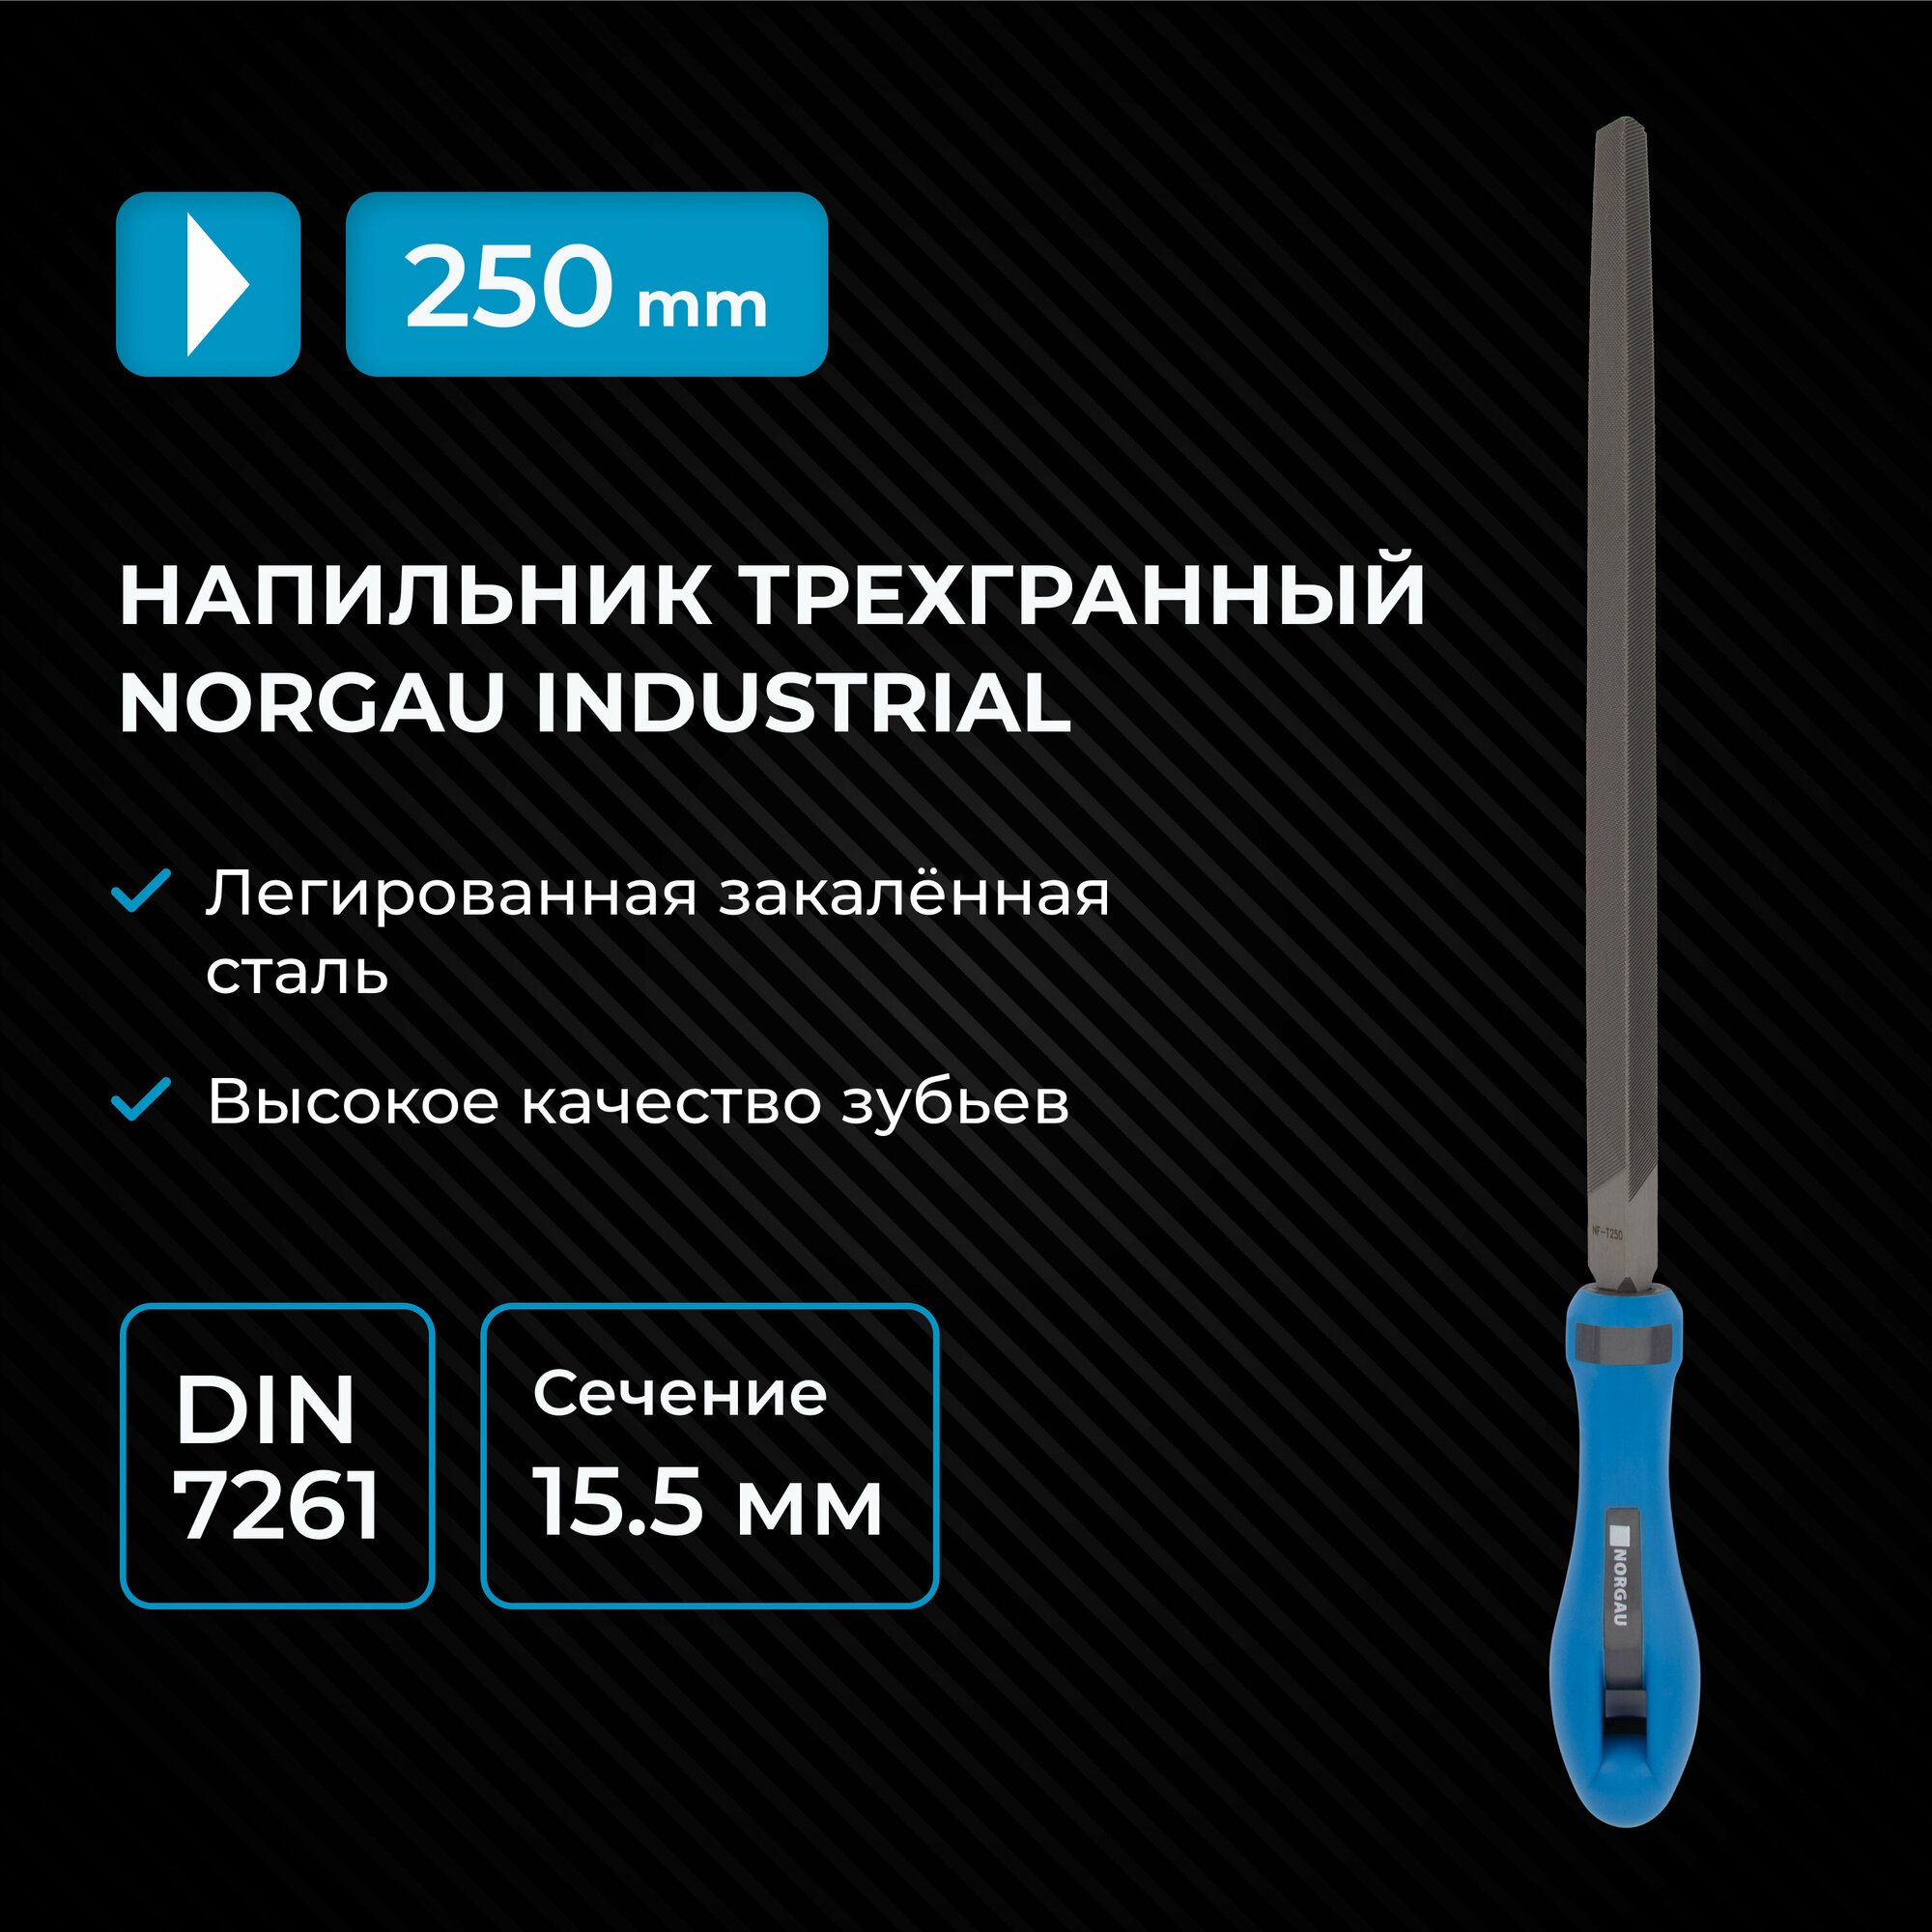 Трехгранный напильник по металлу NORGAU Industrial с двухкомпонентной рукояткой 250 мм